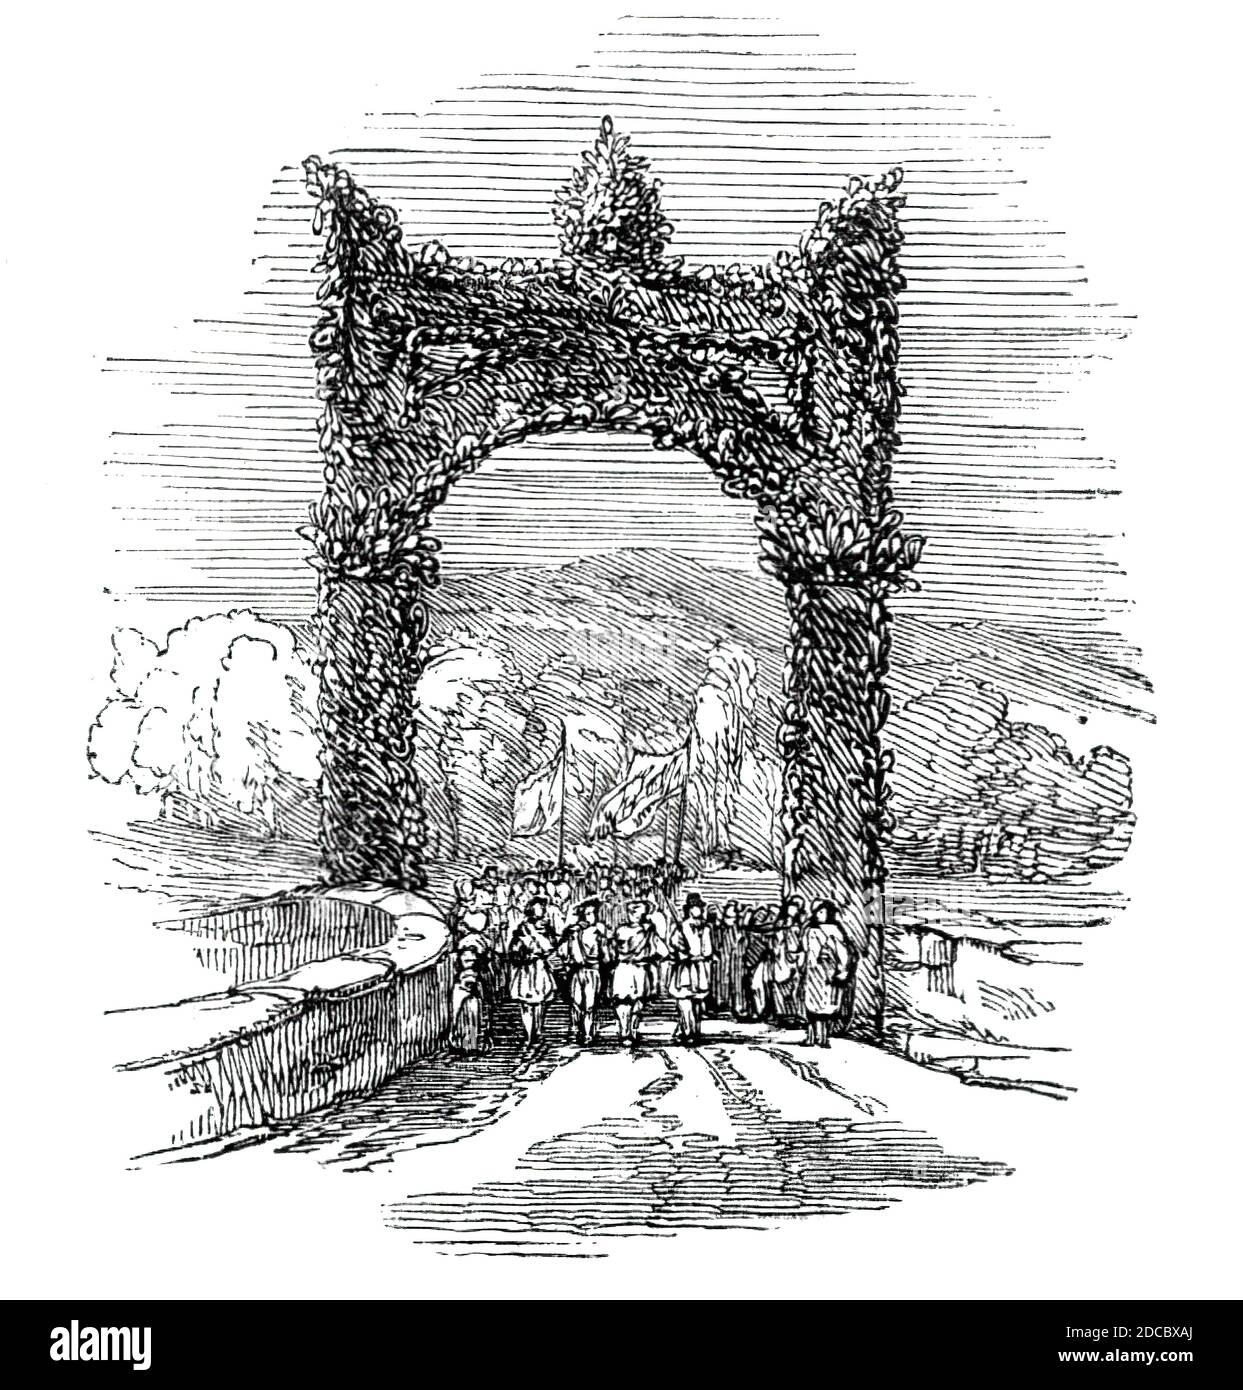 Bogen auf dem alten Brig von Doon, 1844. Blumenbogen auf der alten Brücke über den Fluss Doon in Ayr in Schottland, Teil des Festivals zu Ehren des schottischen Dichters Robert Burns. Aus "Illustrated London News", 1844, Vol Stockfoto